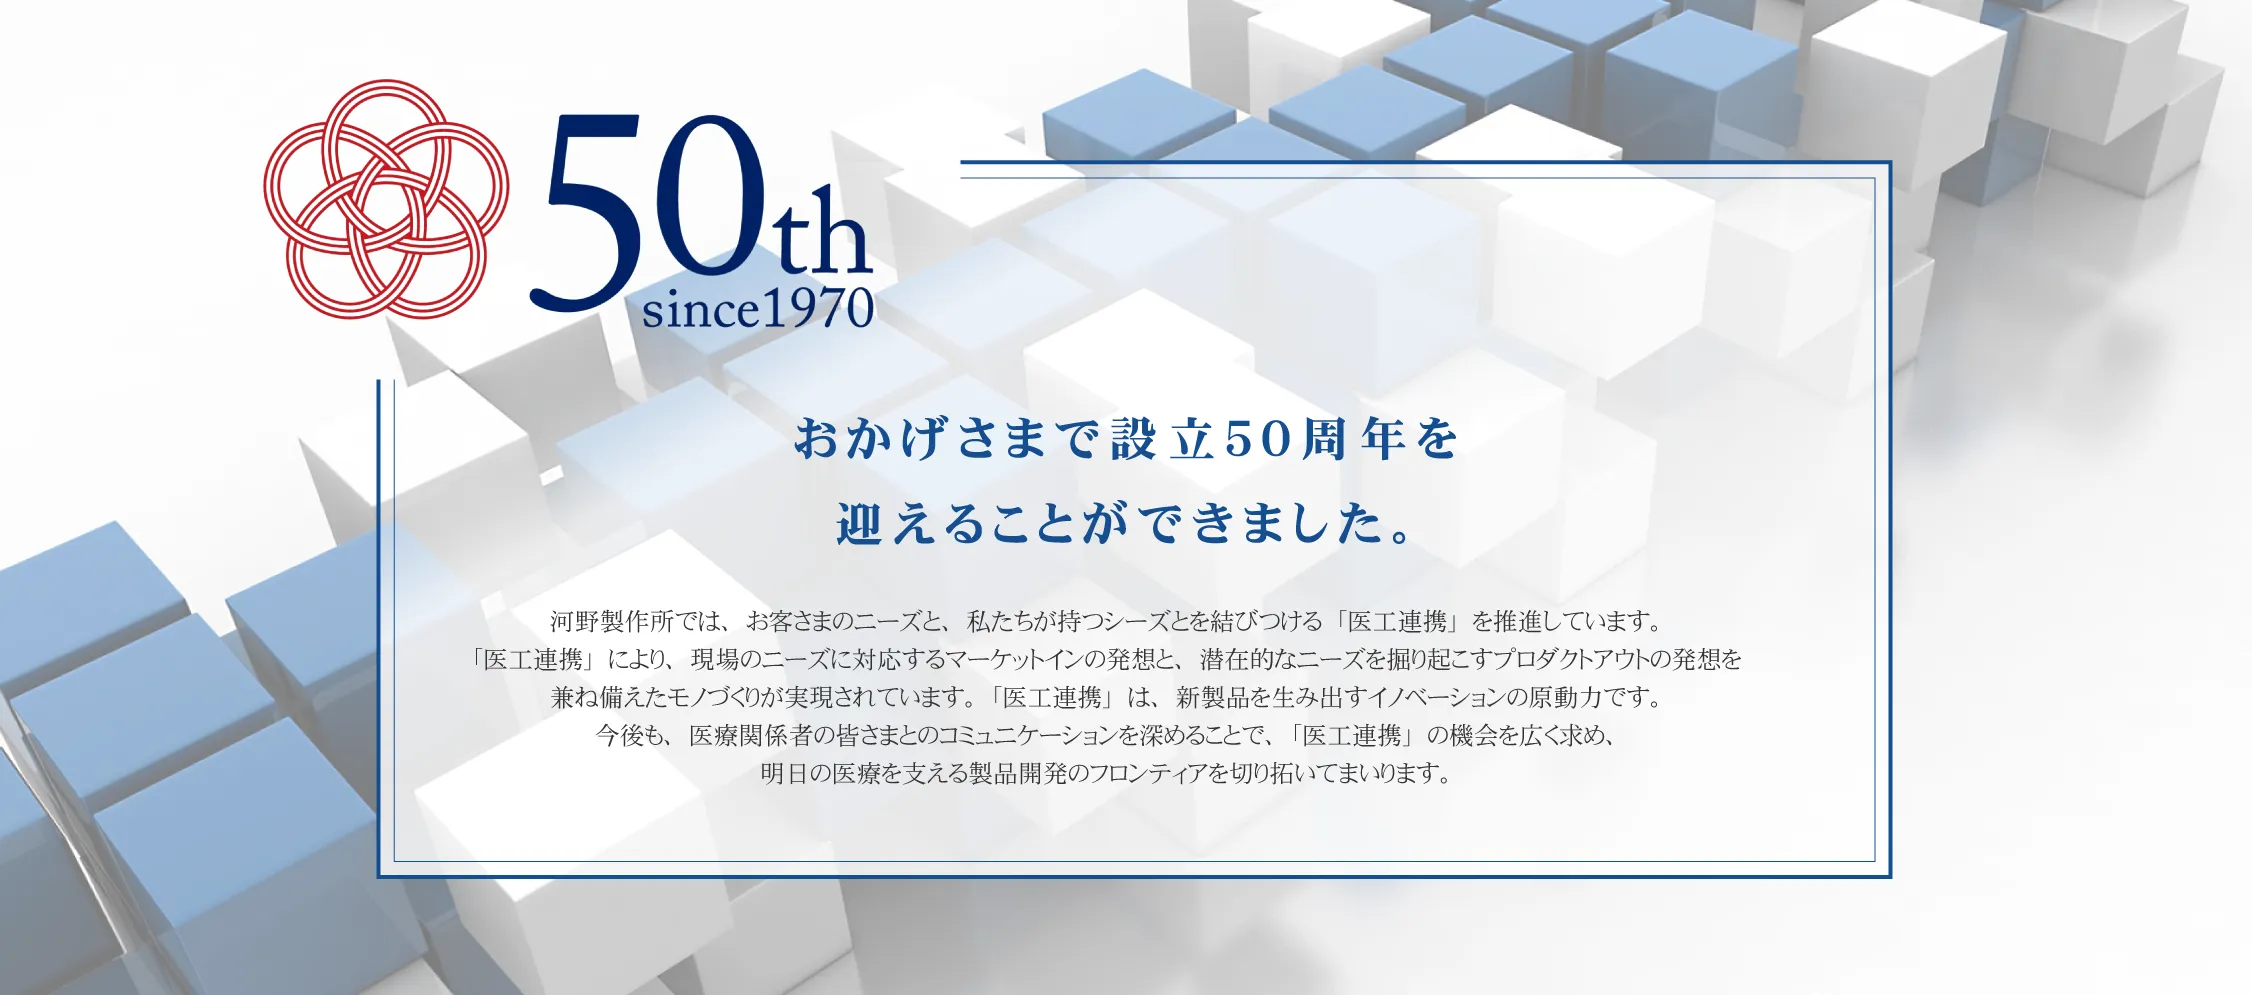 設立50周年記念